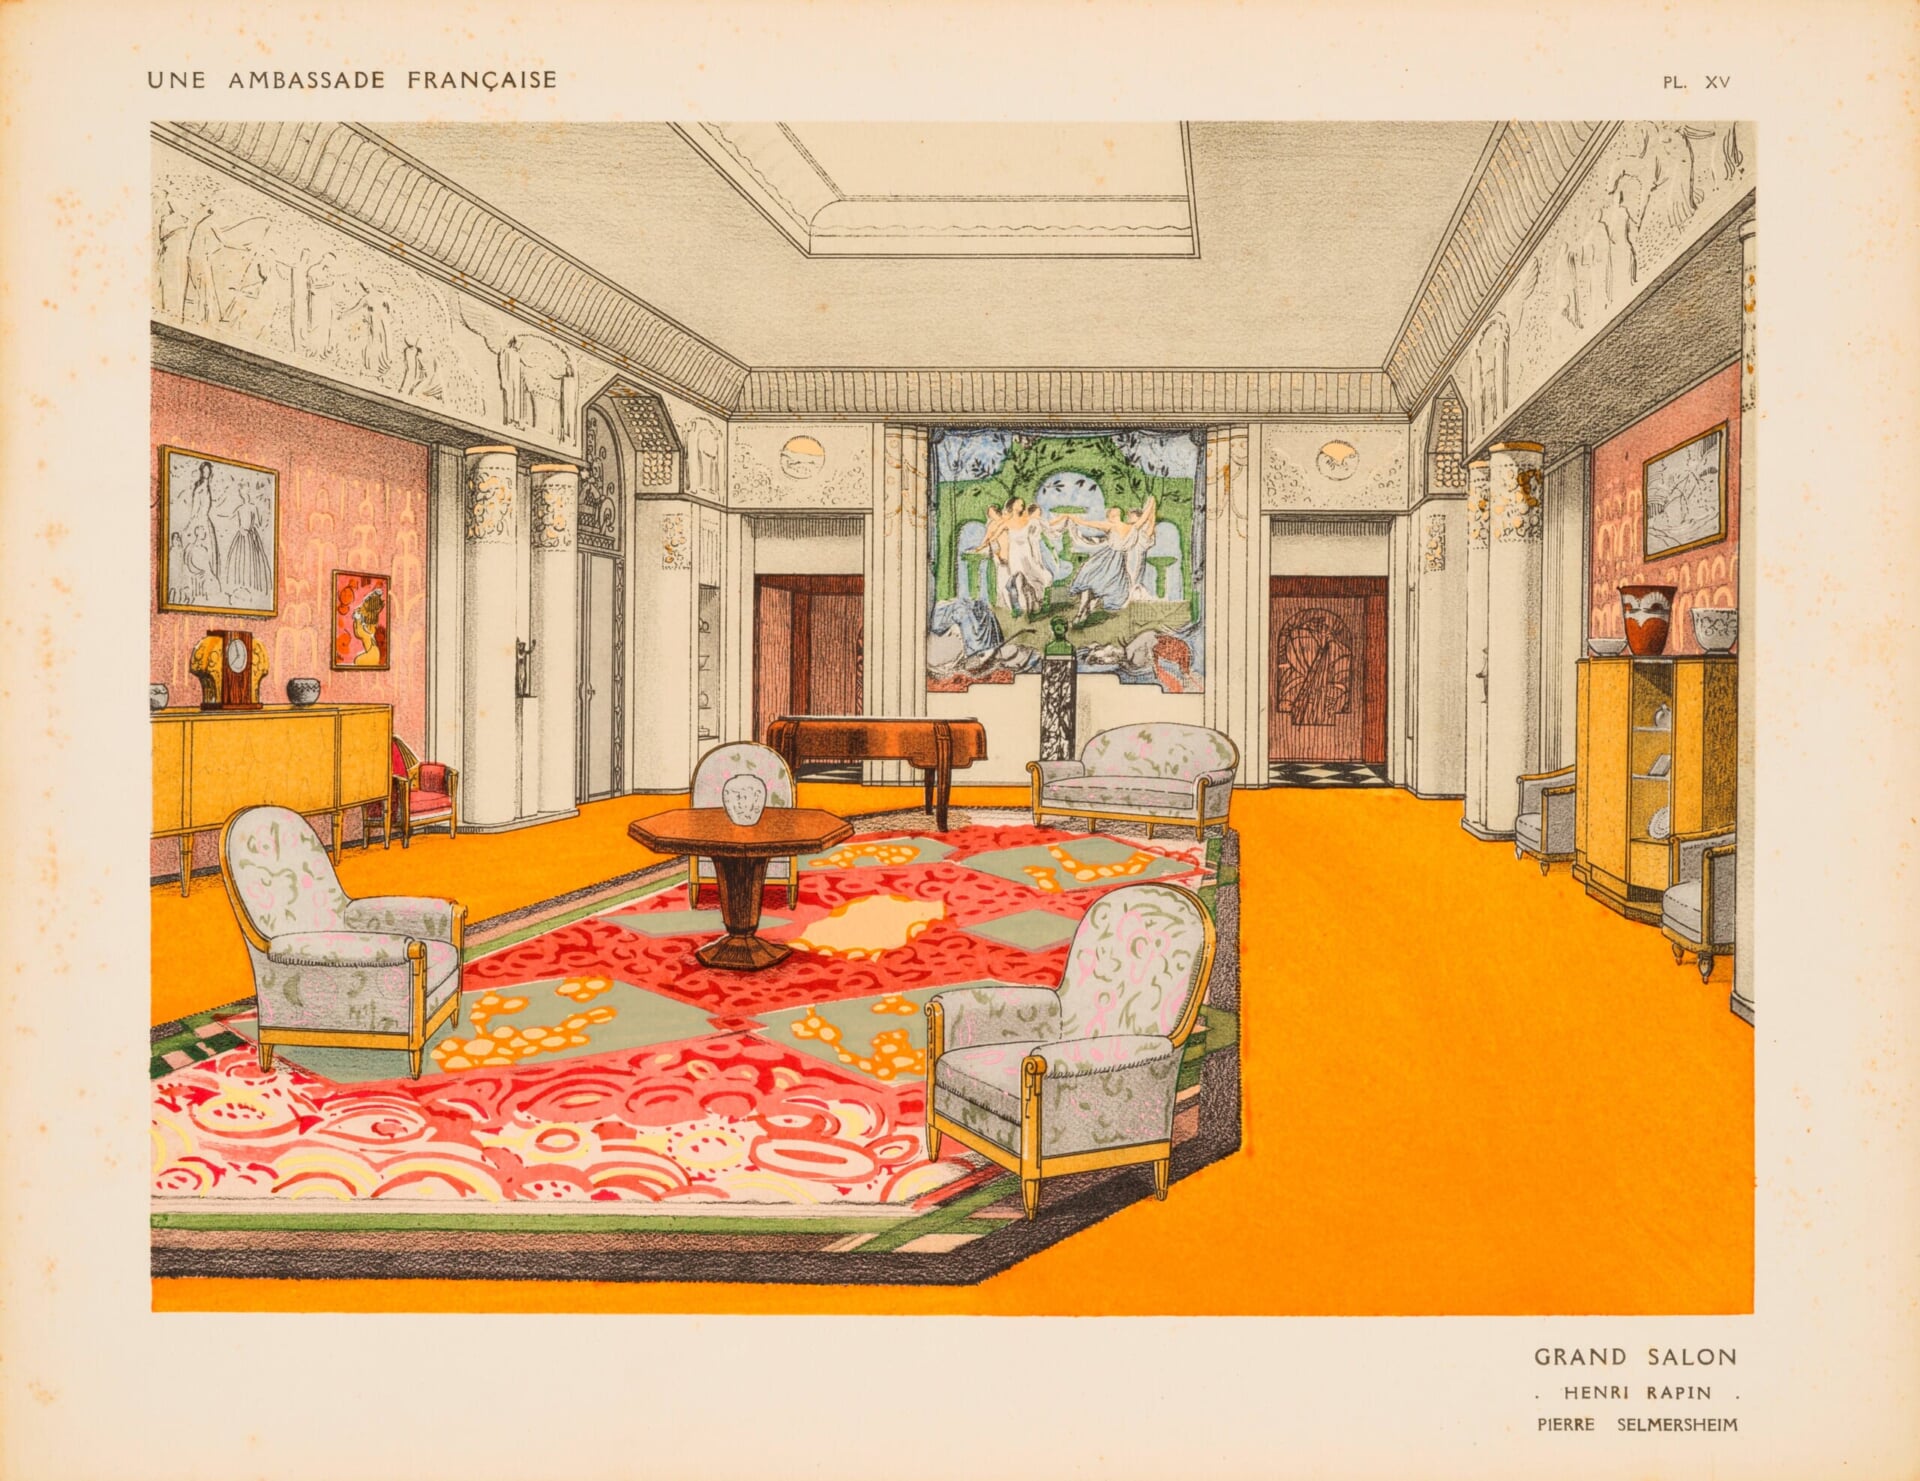 Grand Salon, Une Ambassade française, 1925. Collection of Tokyo Metropolitan Teien Art Museum